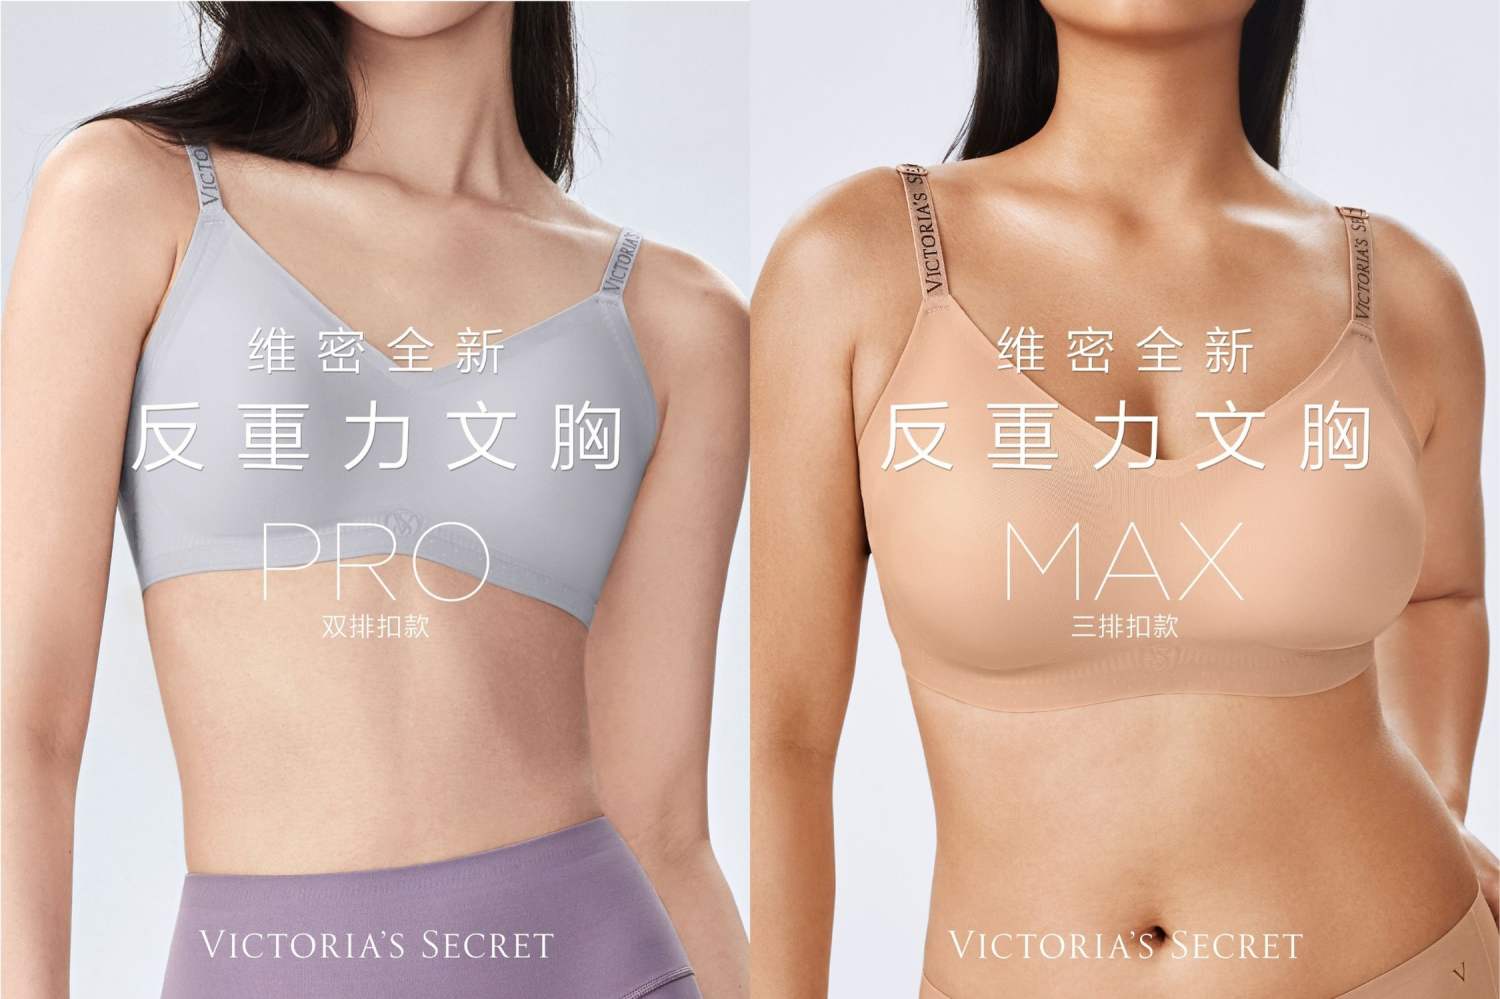 內衣品牌維密針對中國市場獨有研發的軟支撐新品「反重力」文胸在去年雙11行業中脫穎而出，市場反響可見一斑